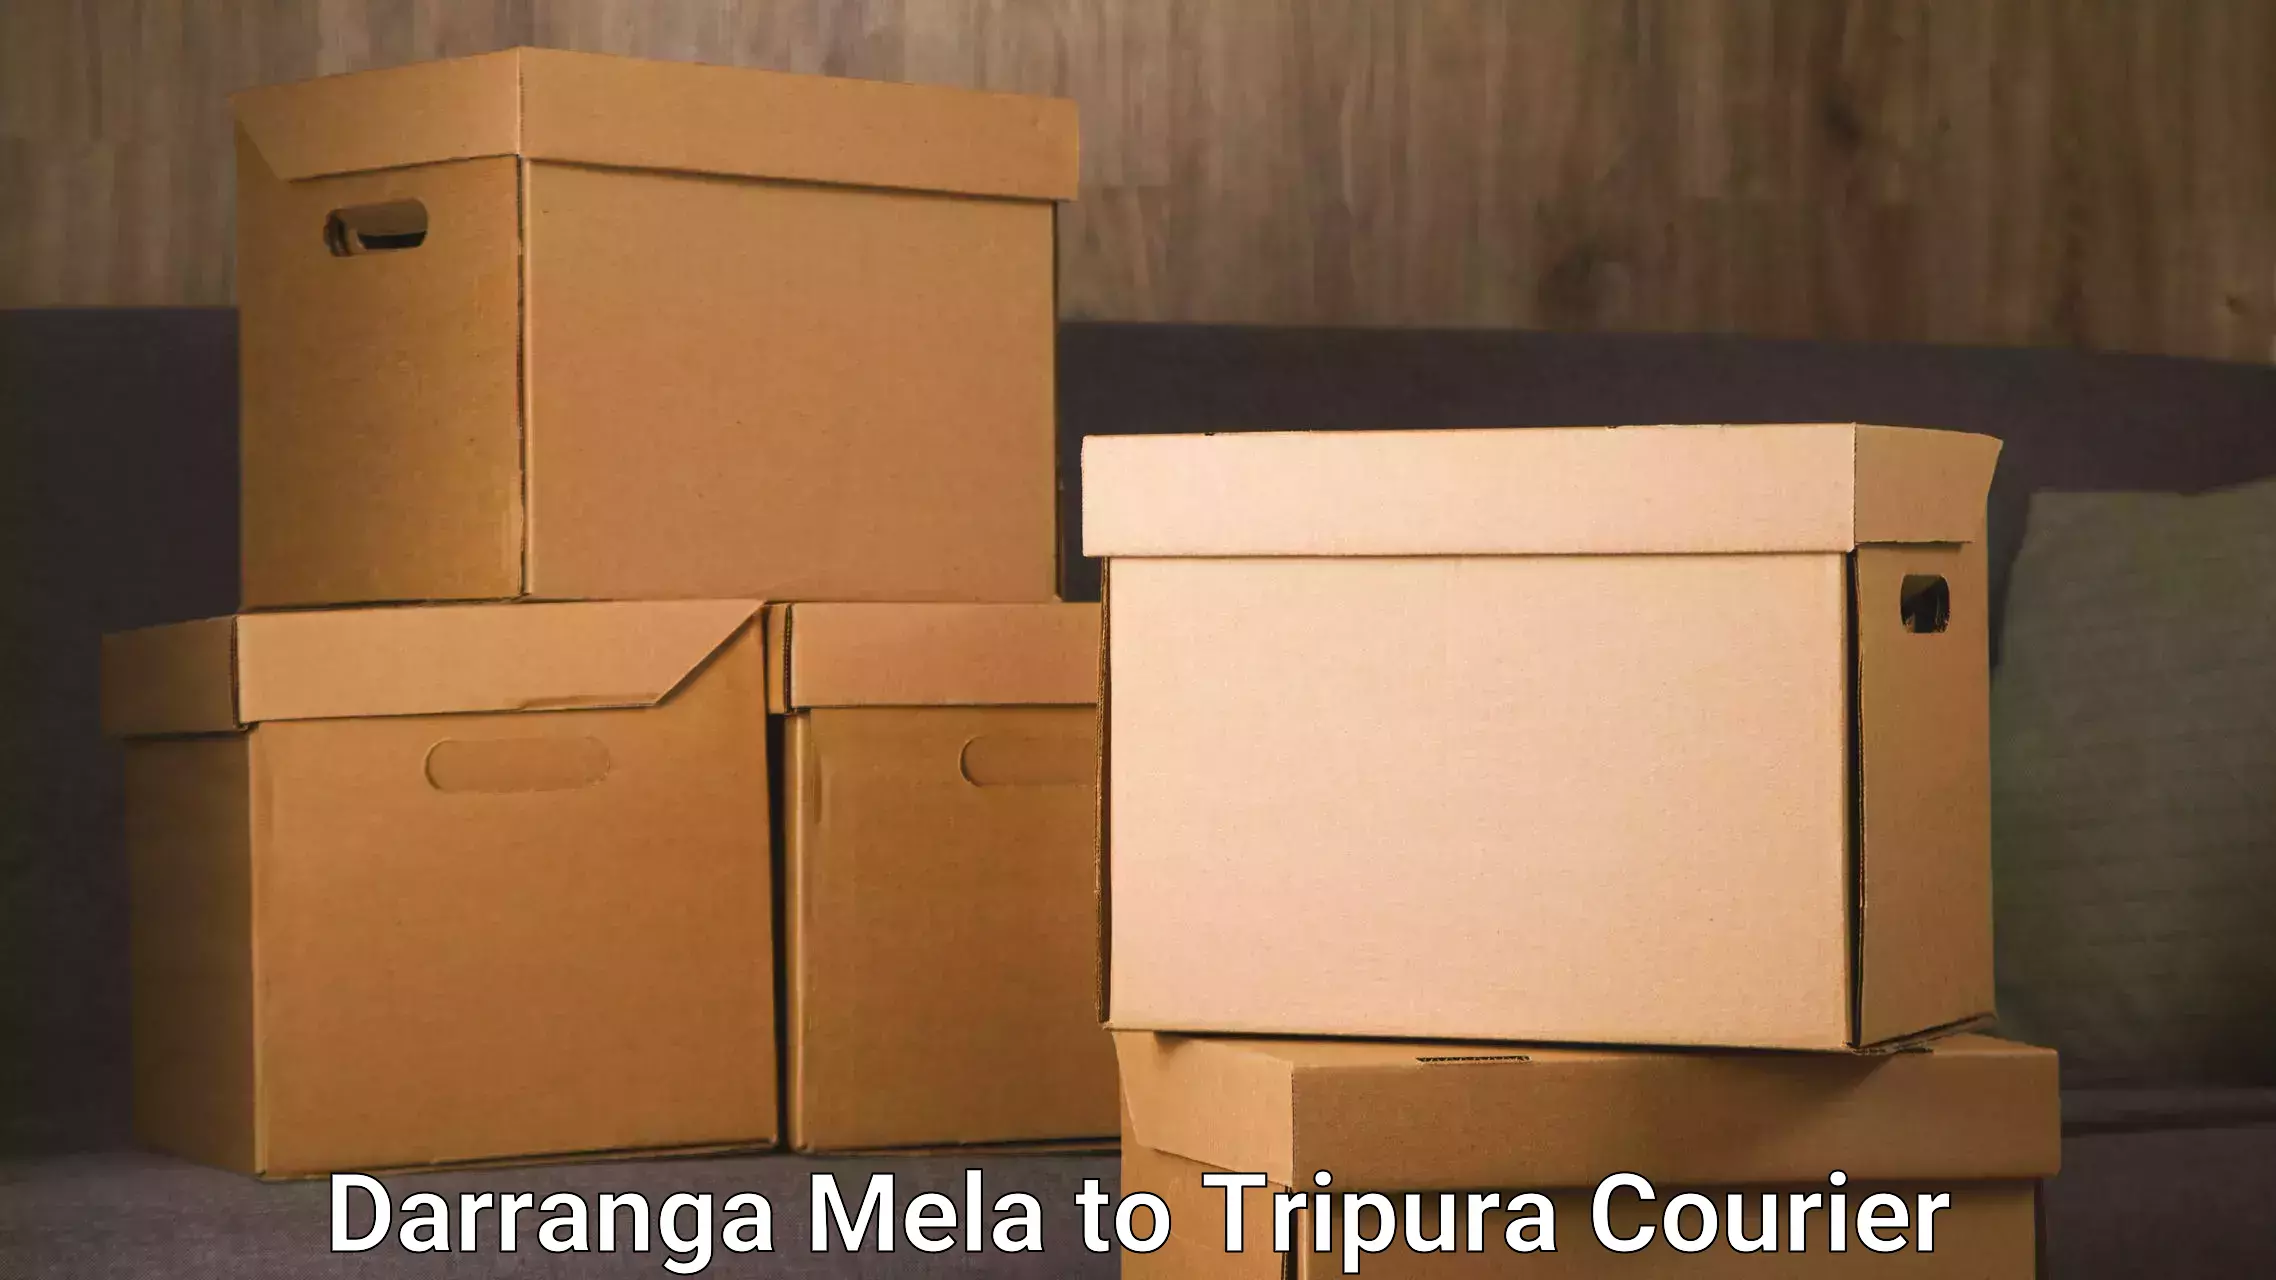 Next-generation courier services Darranga Mela to West Tripura